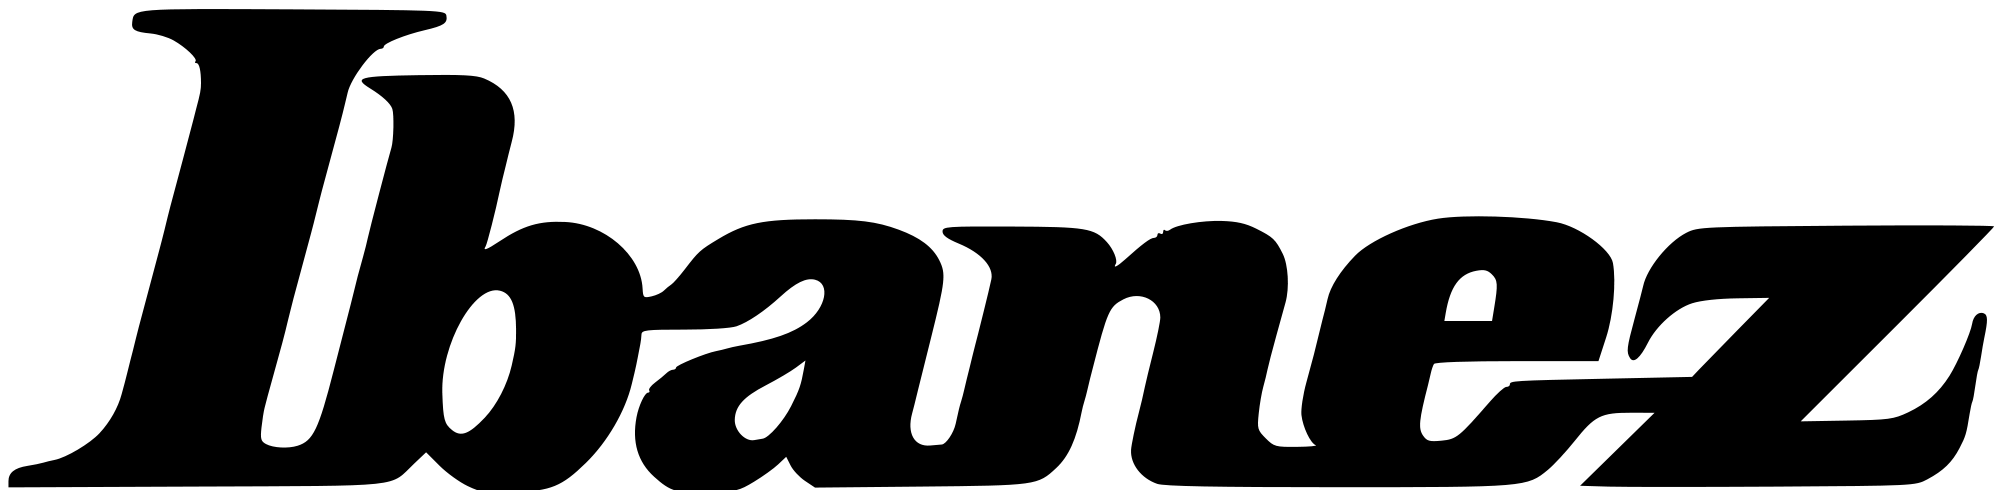 Ibanez Logo - 60+ Ibanez Logo Wallpapers - Download at WallpaperBro